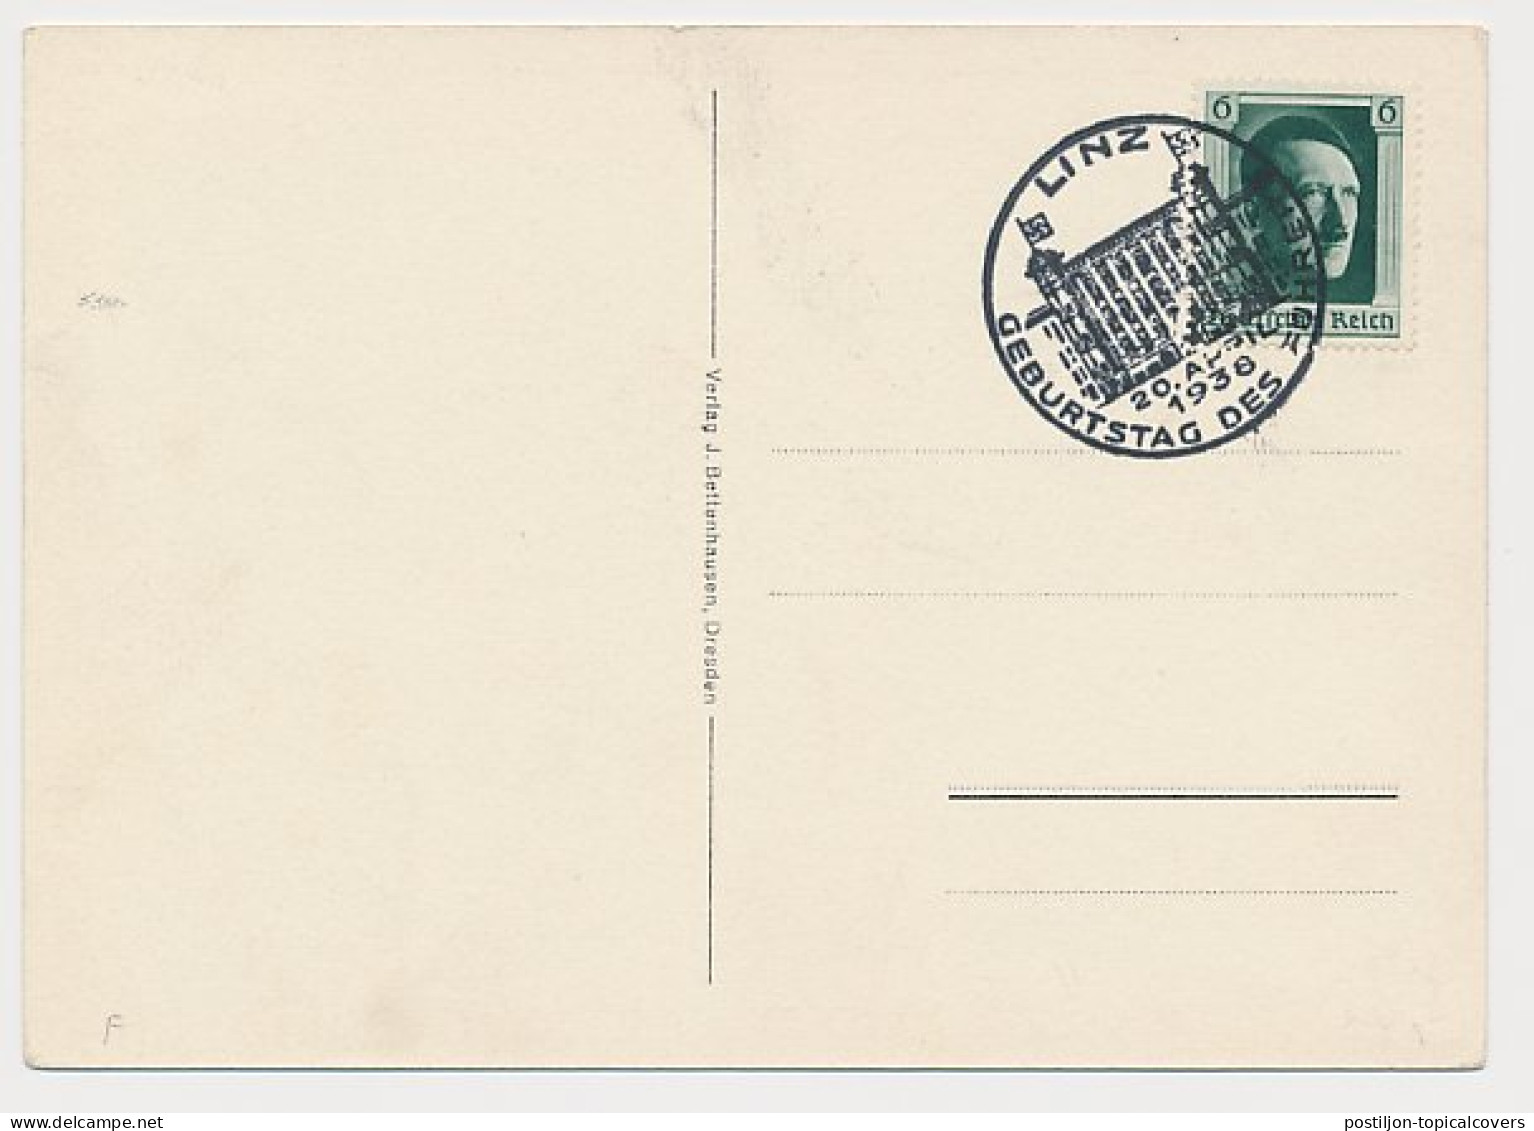 Postcard / Postmark Deutsches Reich / Germany / Austria 1939 Adolf Hitler - WW2